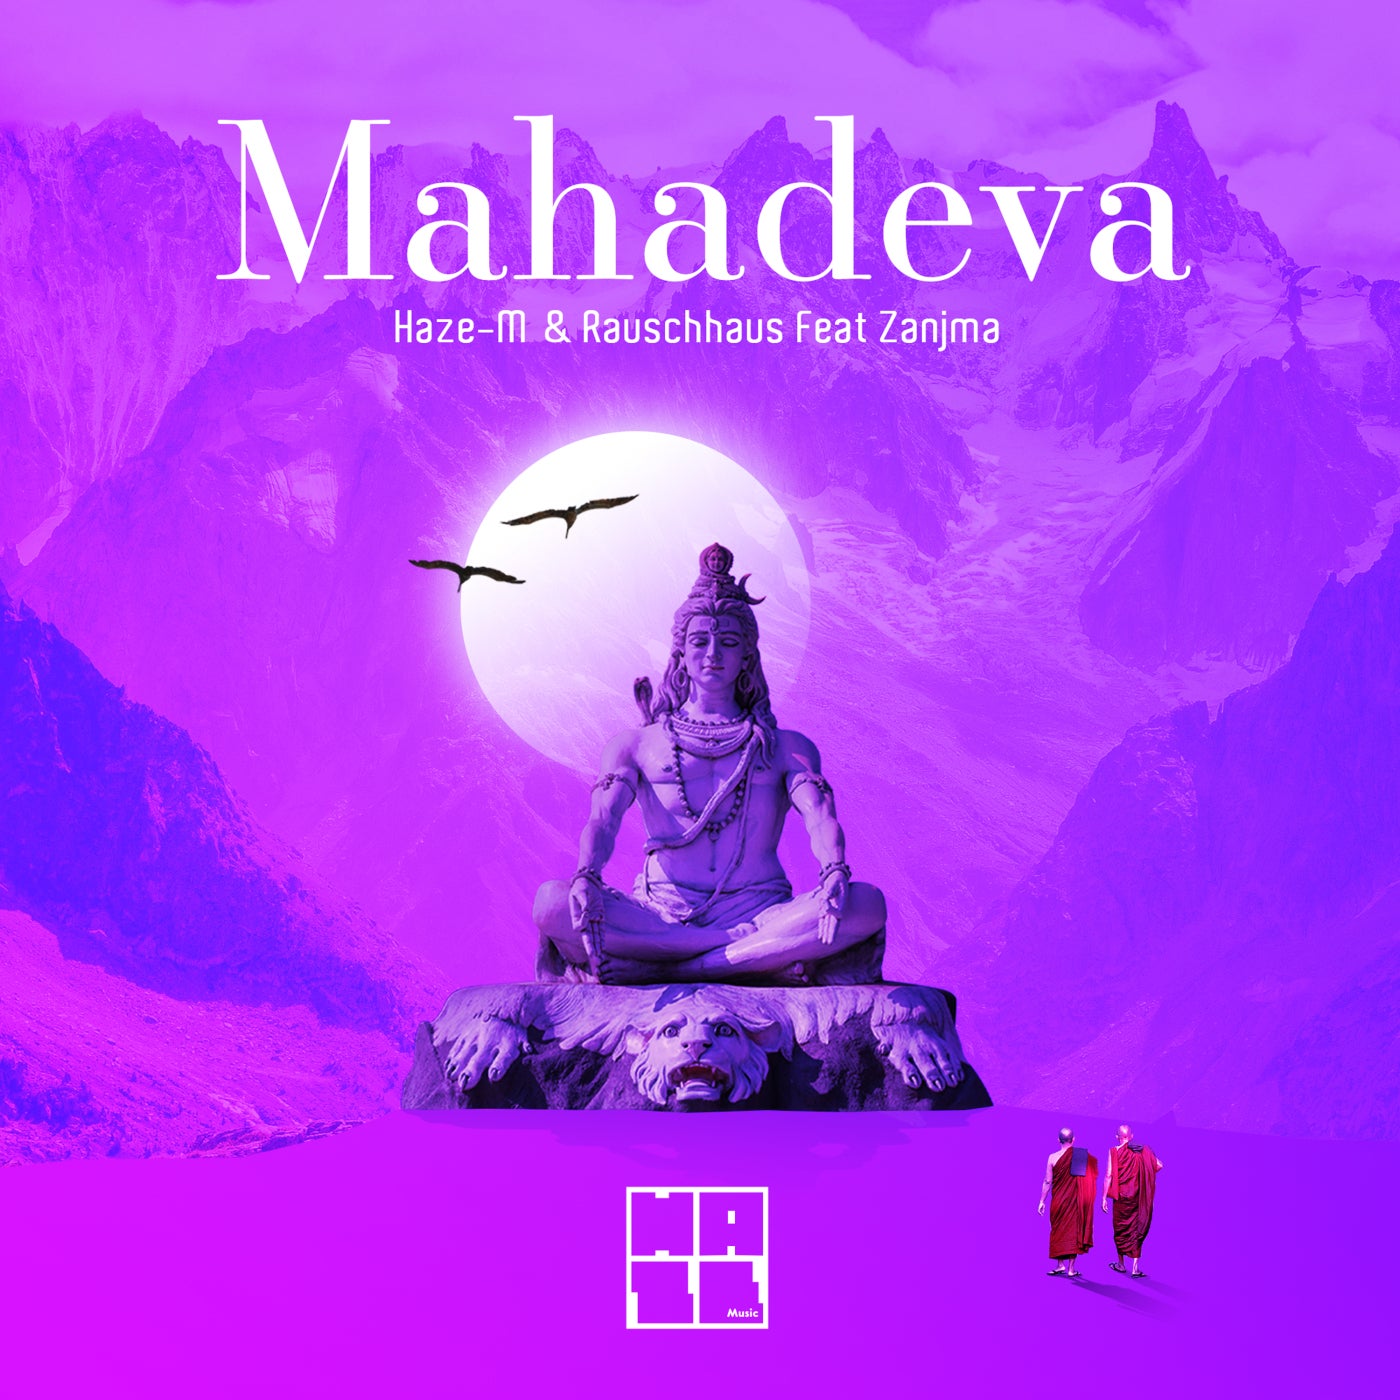 Haze-M & Rauschhaus feat. Zanjma - Mahadeva (Original Mix)